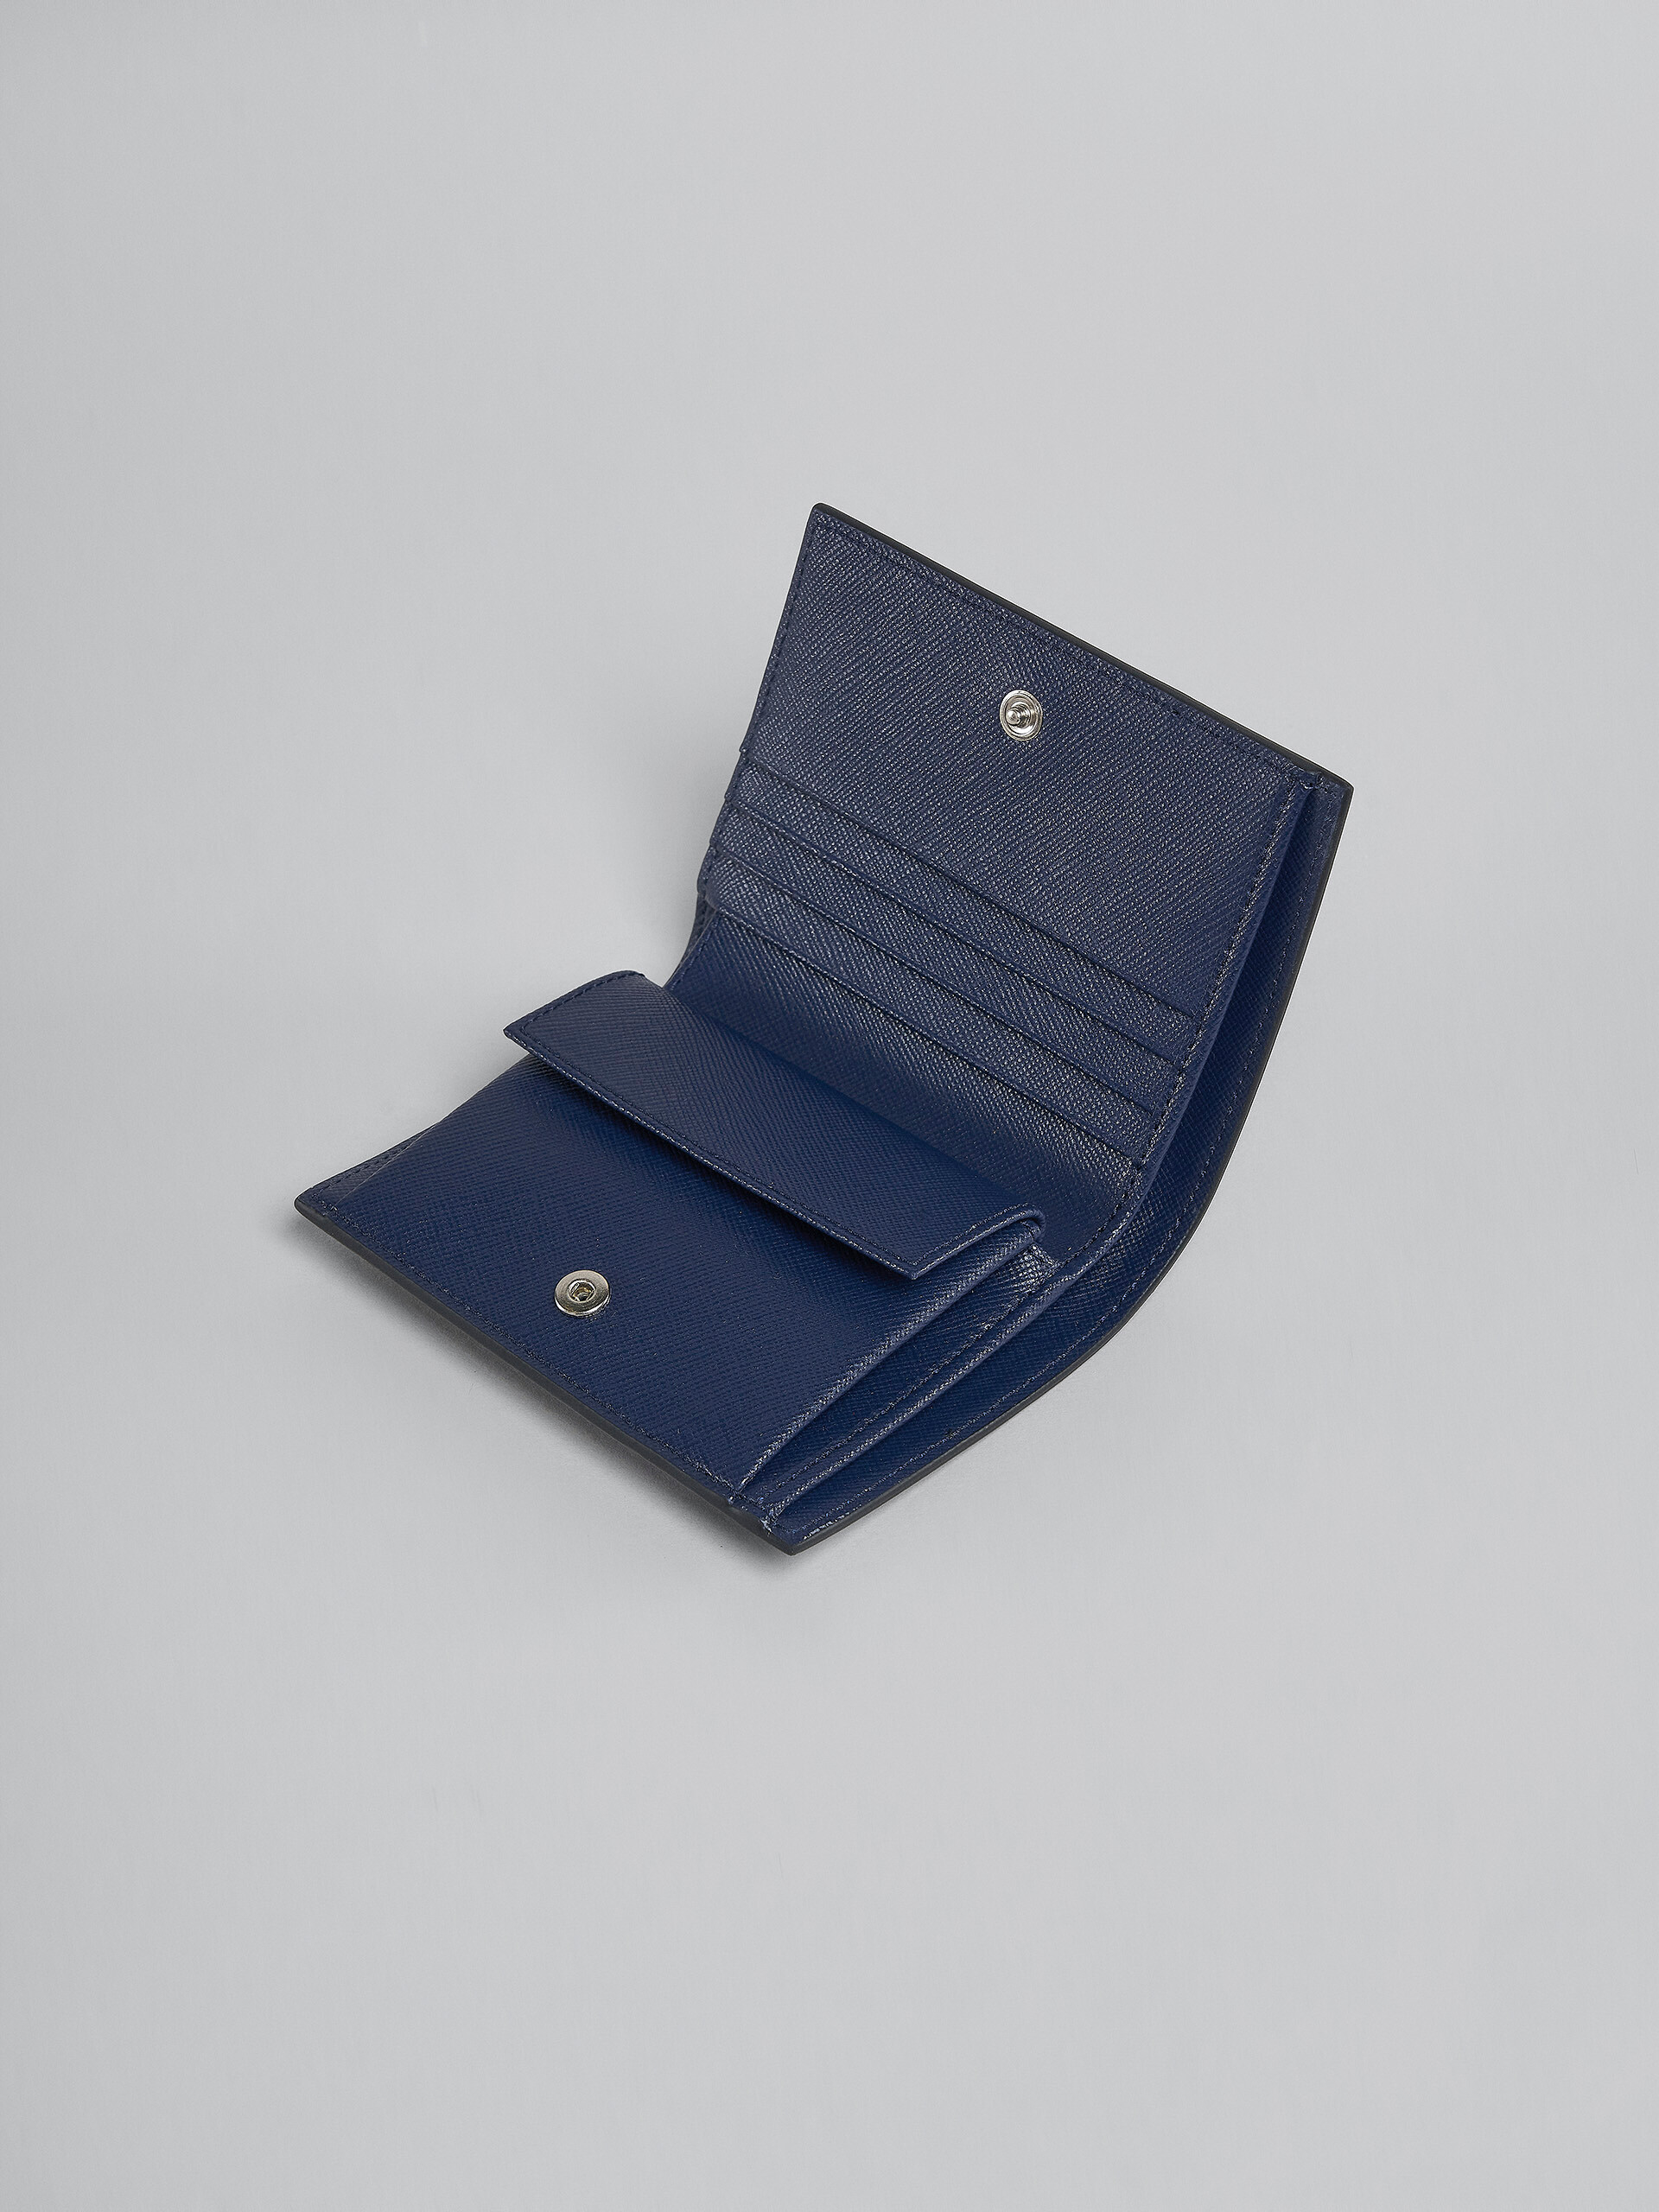 ブラック サフィアーノレザー製 二つ折りウォレット - 財布 - Image 4